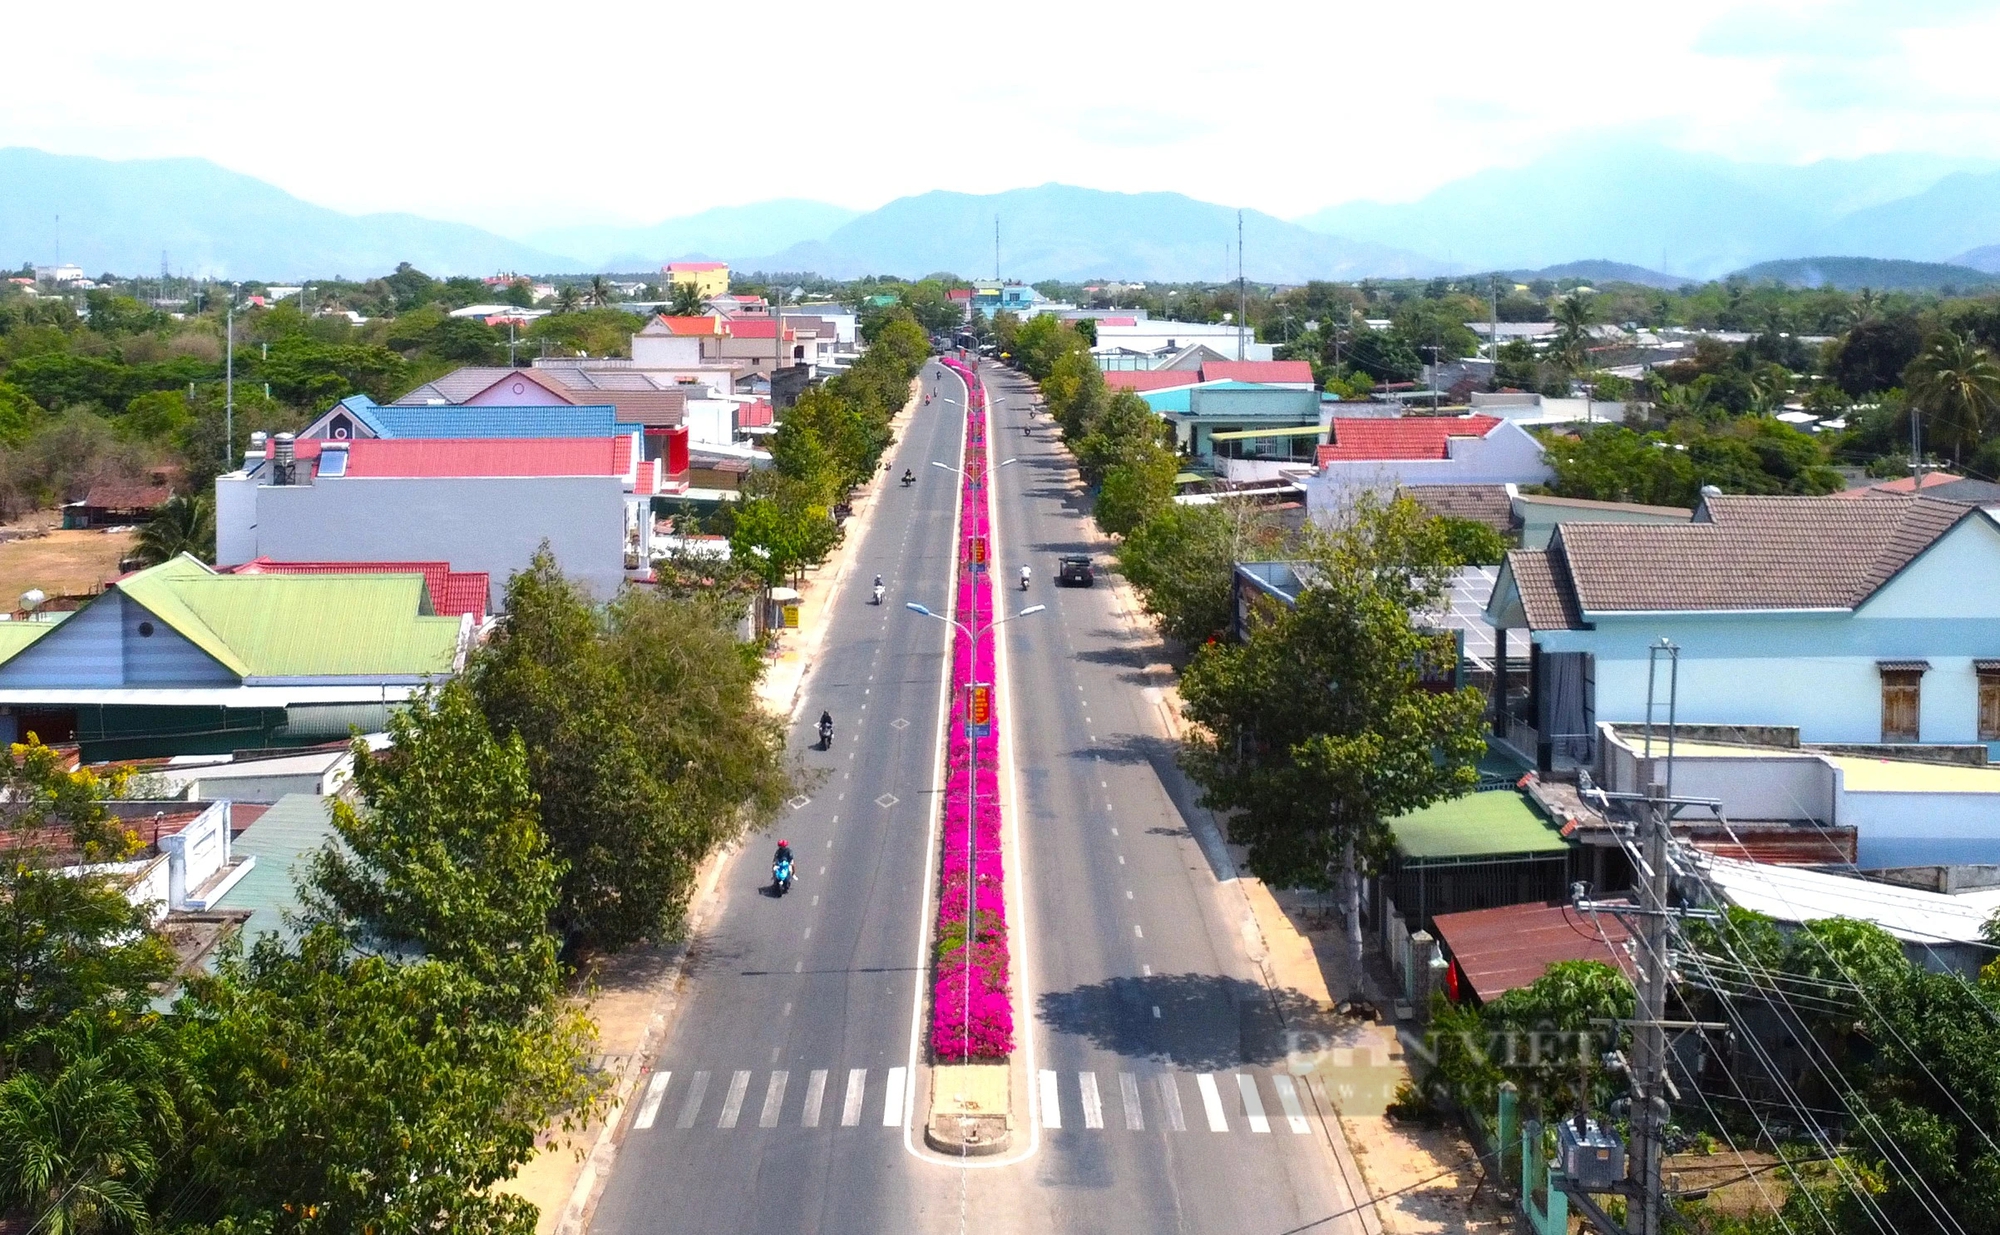 Đường hoa giấy đẹp như phim ở một huyện của Ninh Thuận, dân tình tha hồ chụp hình khoe "phây"- Ảnh 3.